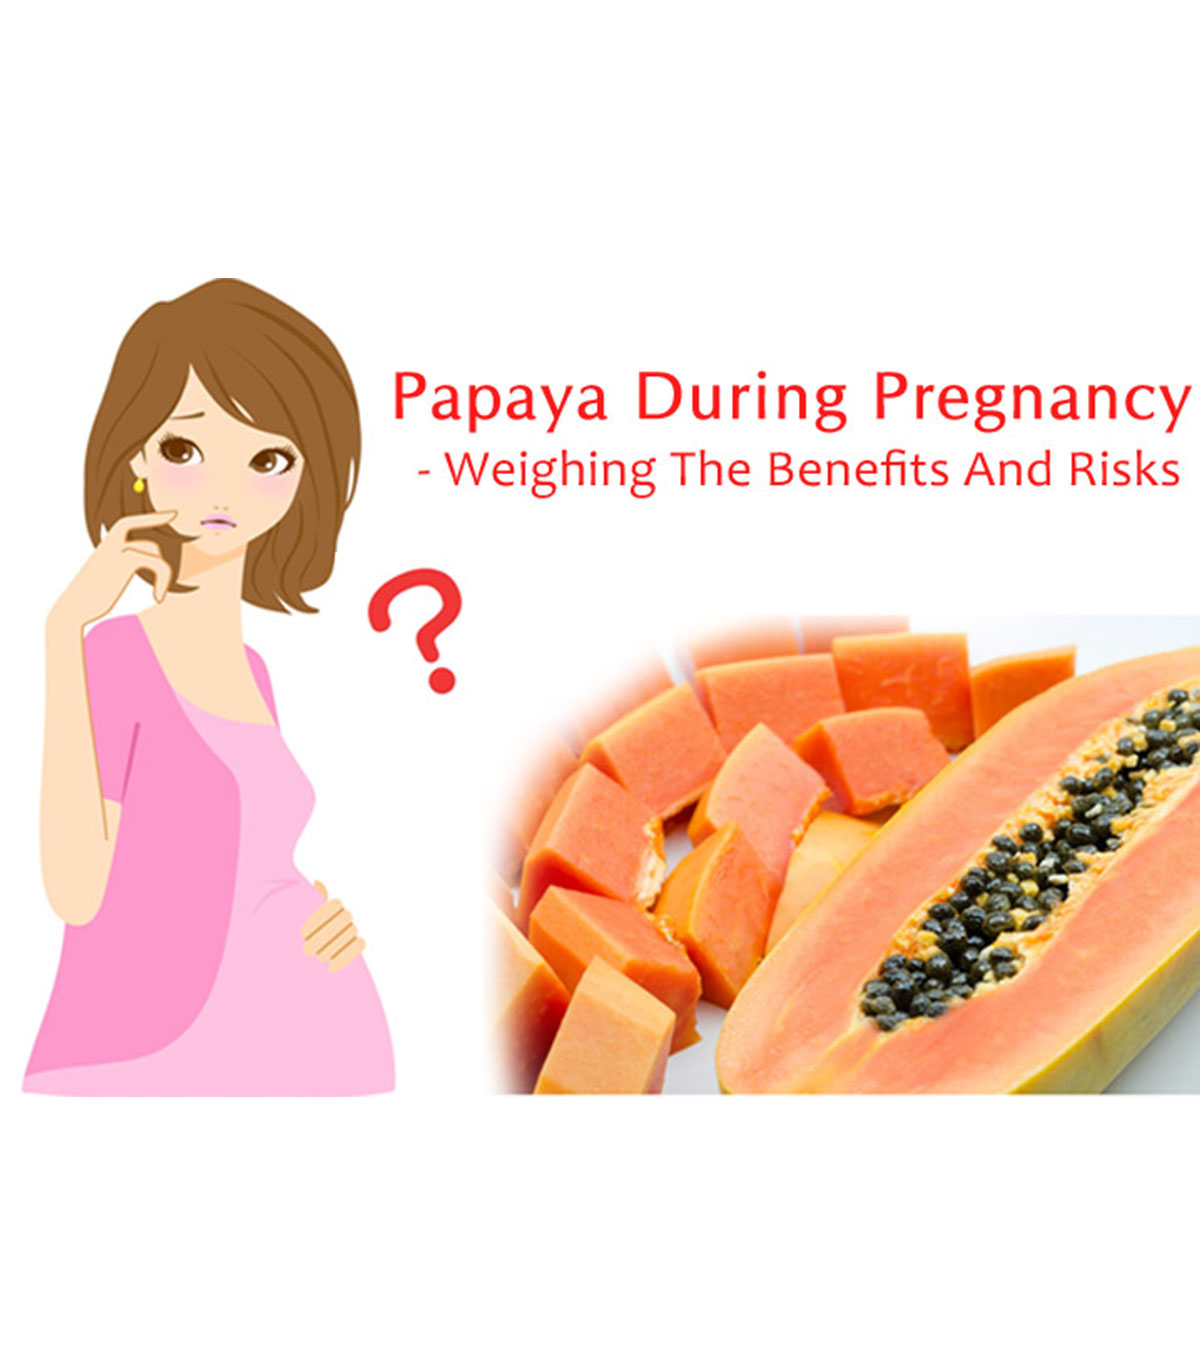 怀孕期间吃木瓜manbet安卓版会导致流产吗?